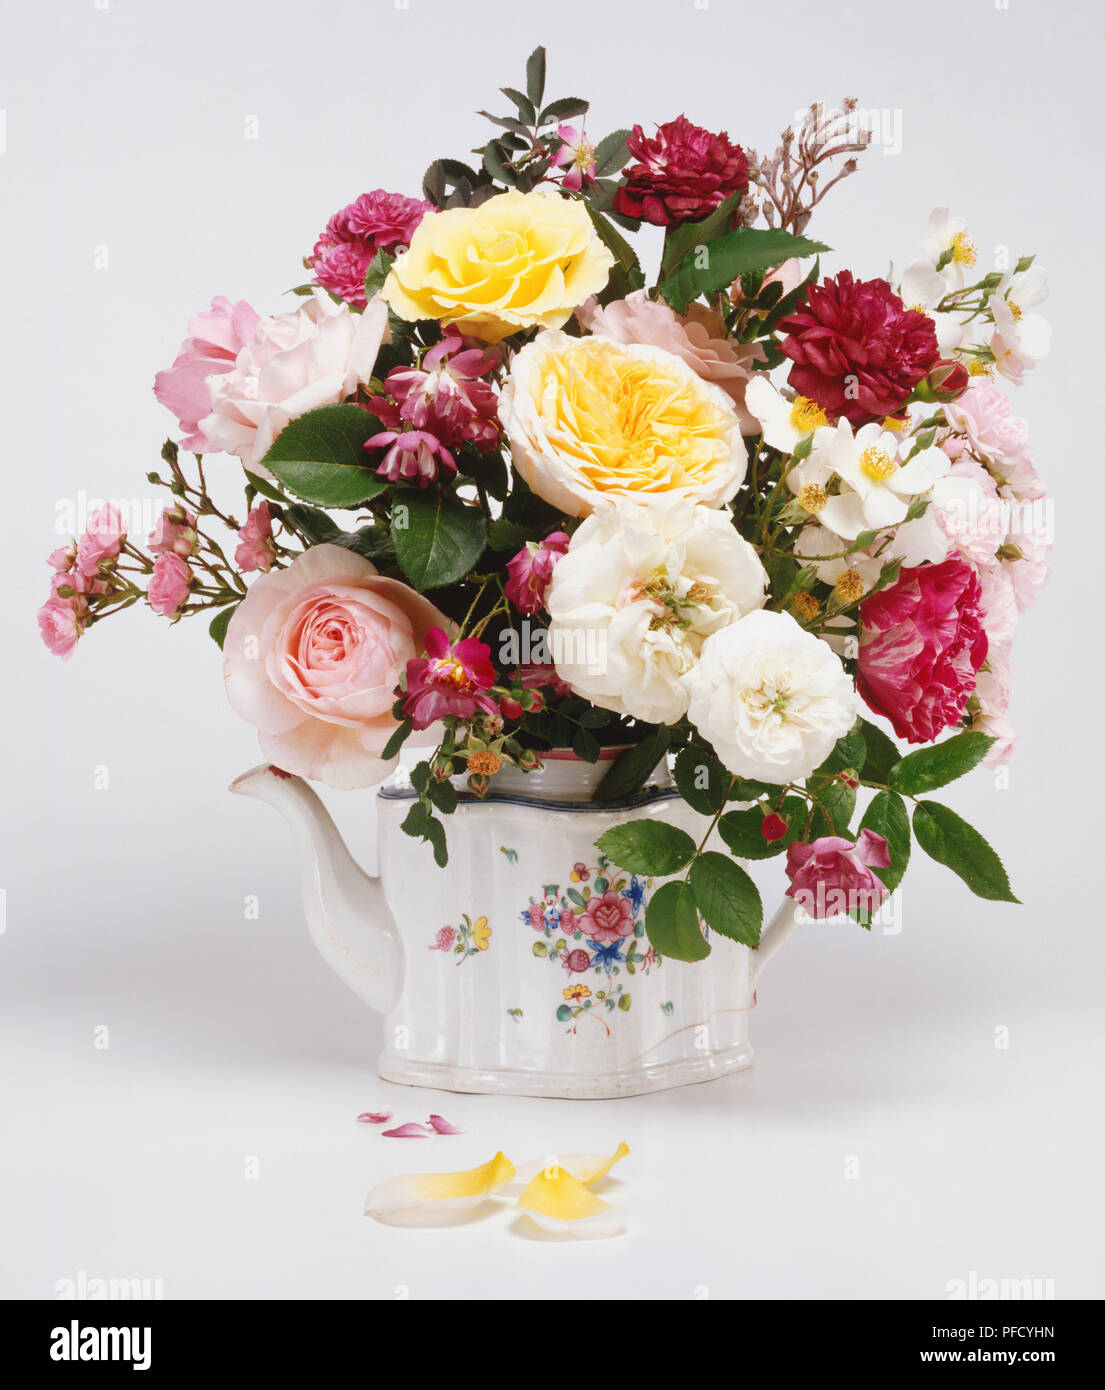 Teekanne von Rosen, altmodische gemischte Rosen in einer gemalten Teekanne mit einige Blütenblätter auf den Boden. Stockfoto